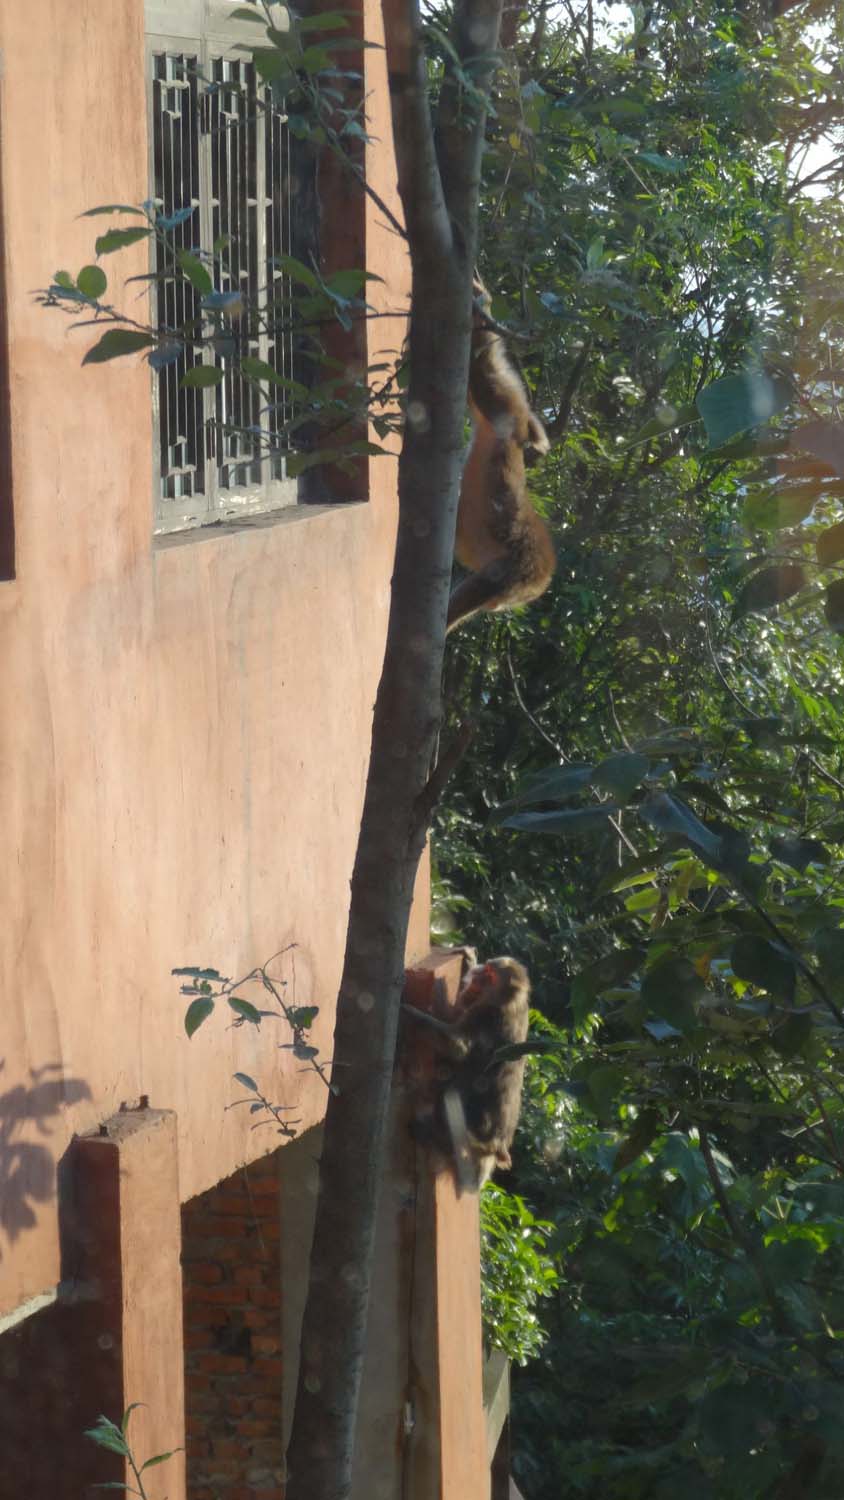 cheeky monkeys trying to break in